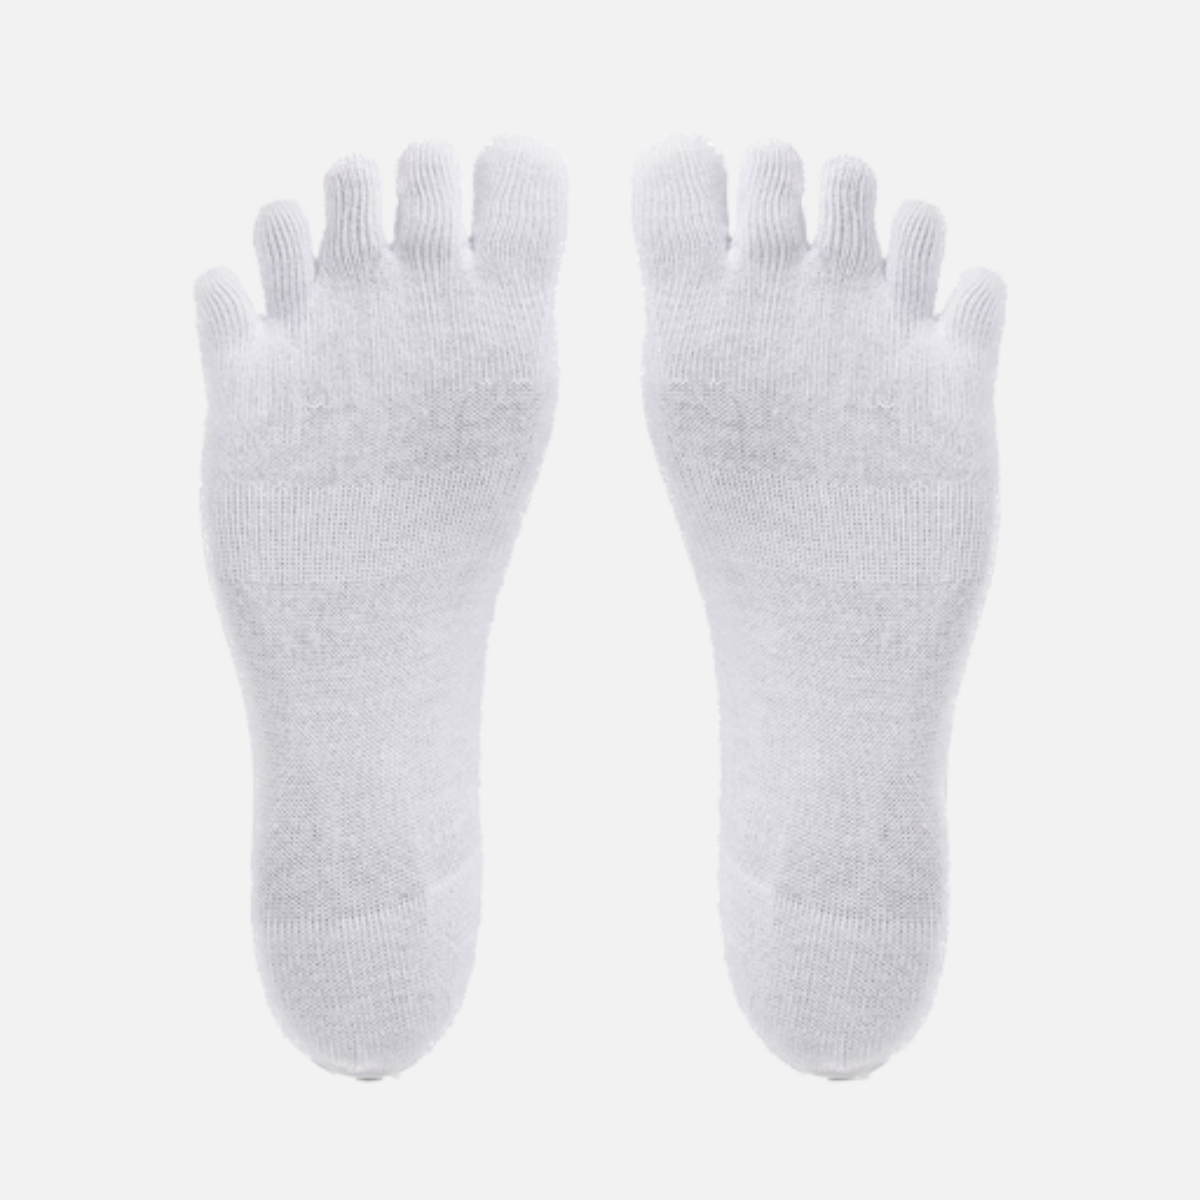 Vibram Five Fingers Socks No Show 1pair (White)